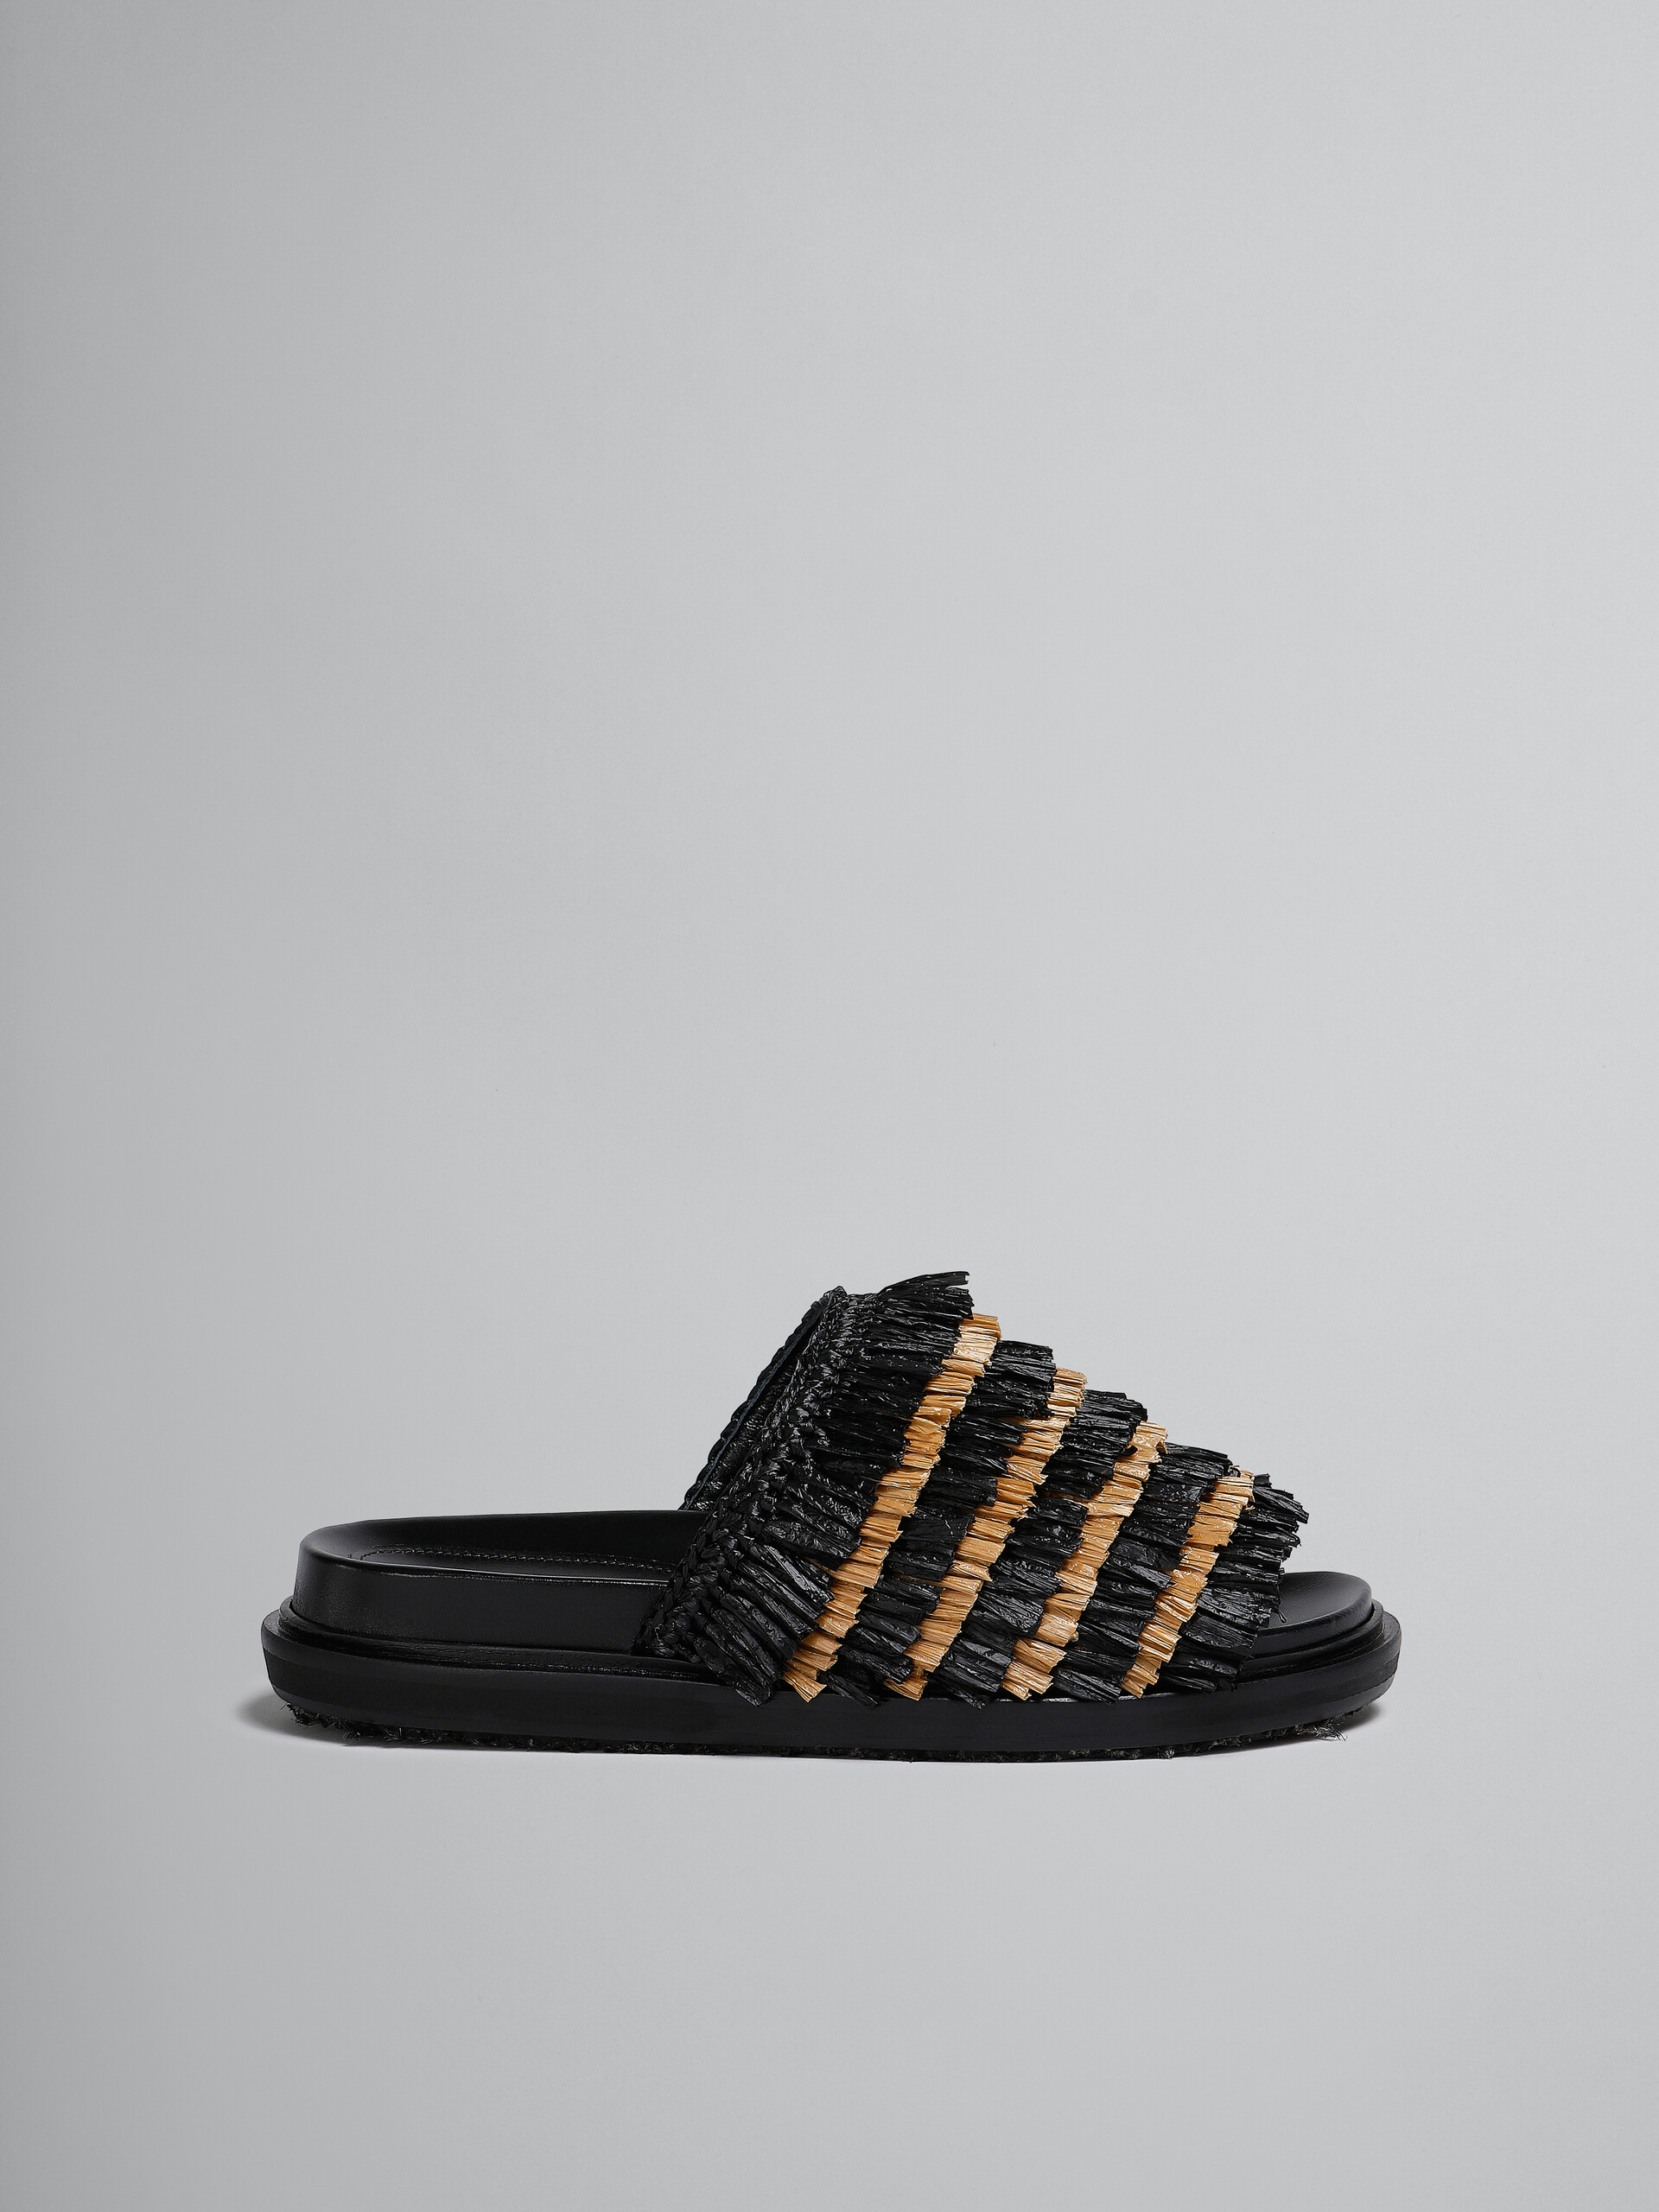 Black fringe slide sandal - Sandals - Image 1